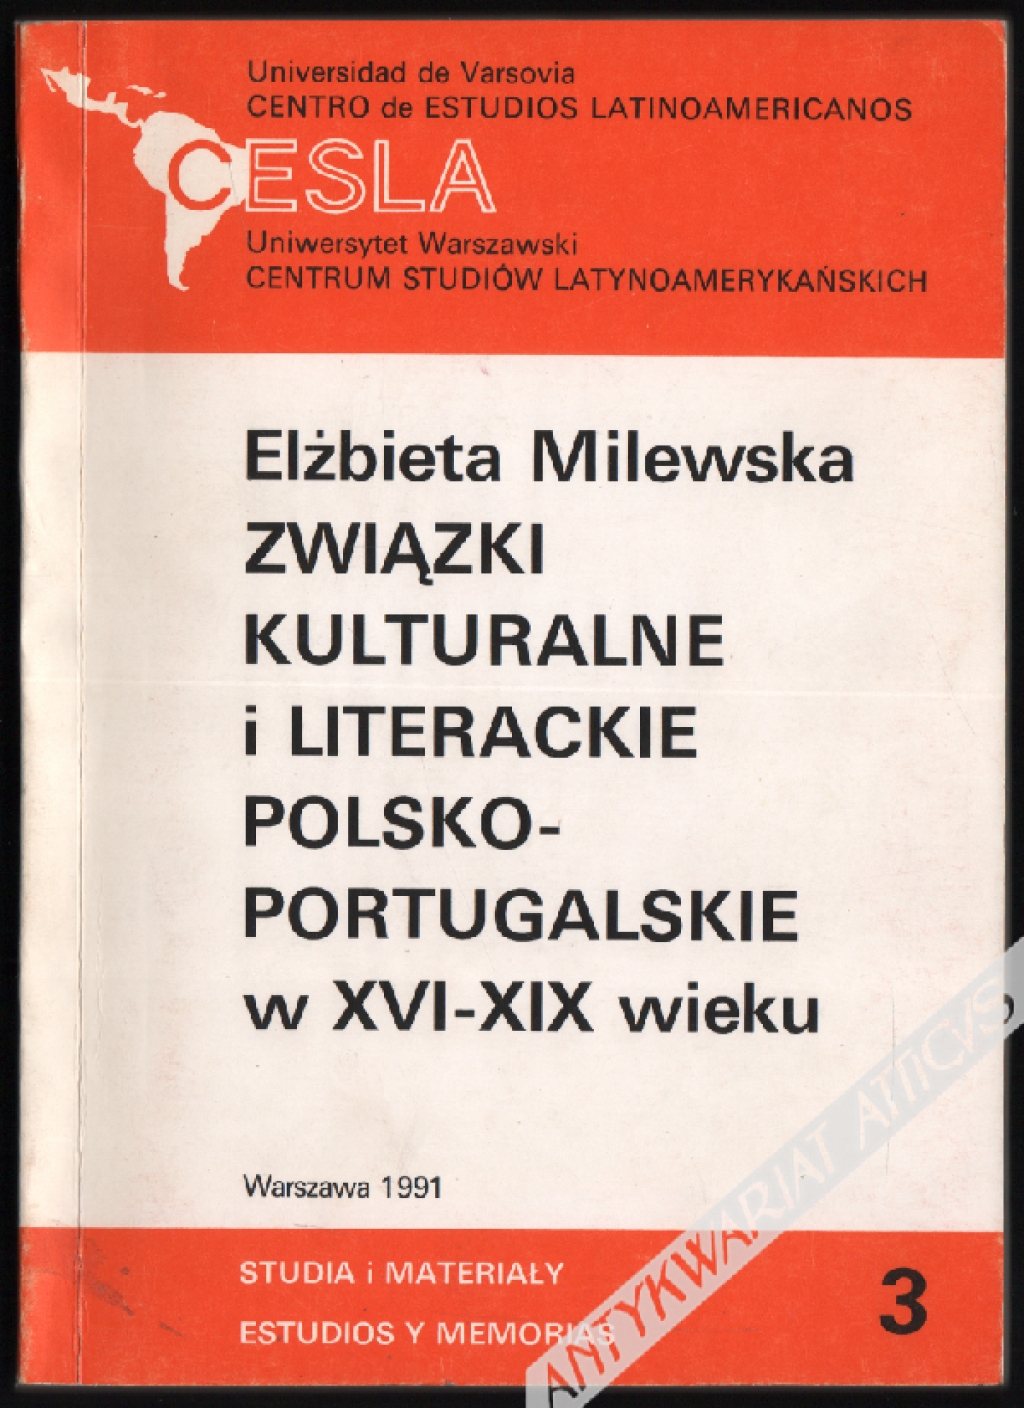 Związki kulturalne i literackie polsko-portugalskie w XVI-XIX wieku